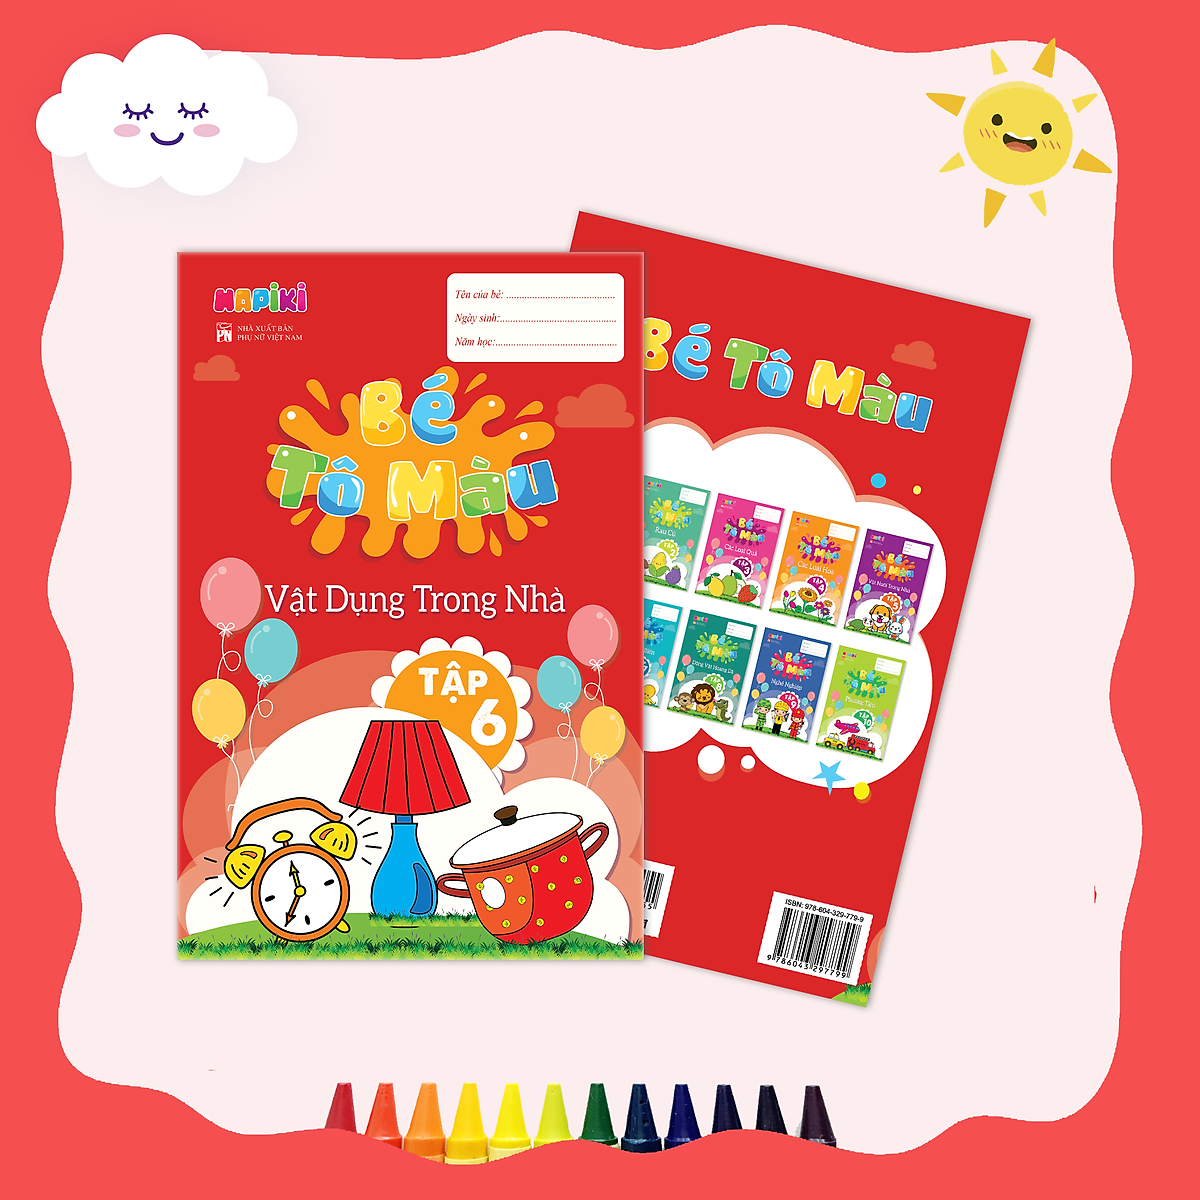 Sách tô màu chủ đề Vật dụng trong nhà tập 6 - Cho cả bé trai, bé gái - 2 tuổi, 3 tuổi, 4 tuổi - Hapiki book